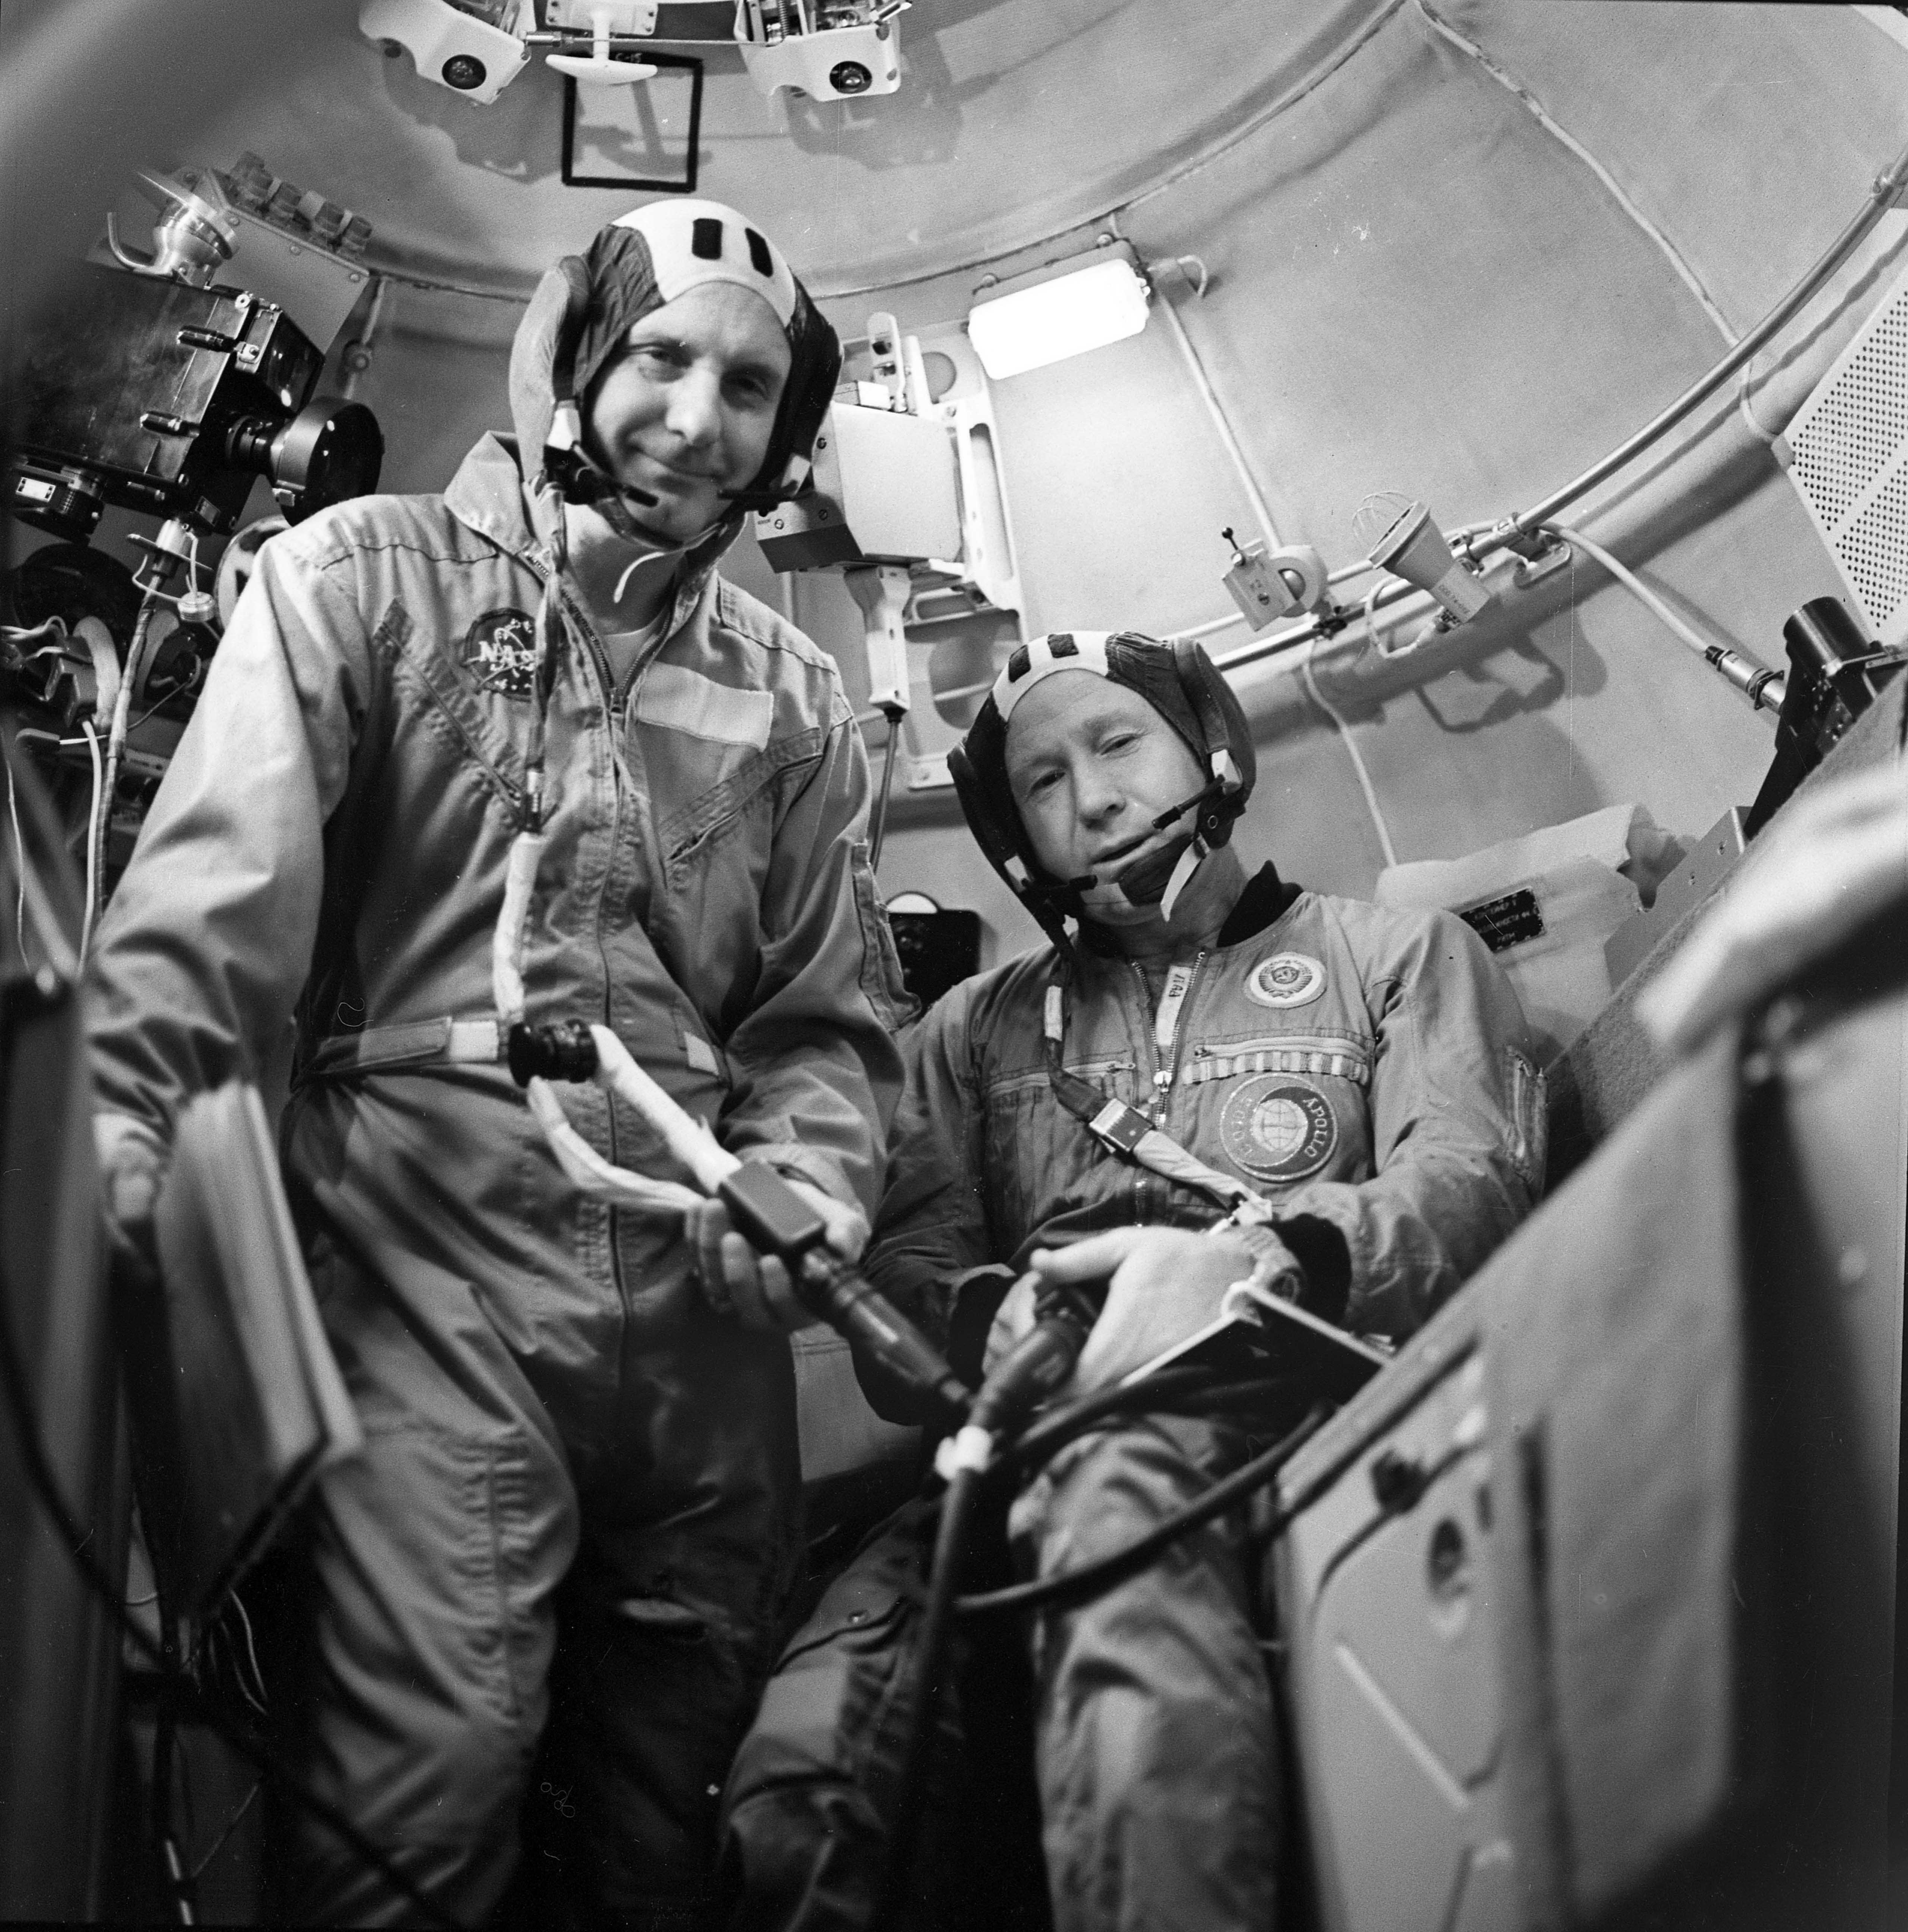 Выход в космос восход 2. Леонов и Беляев космонавты. 1965 Полет Леонова и Беляева.